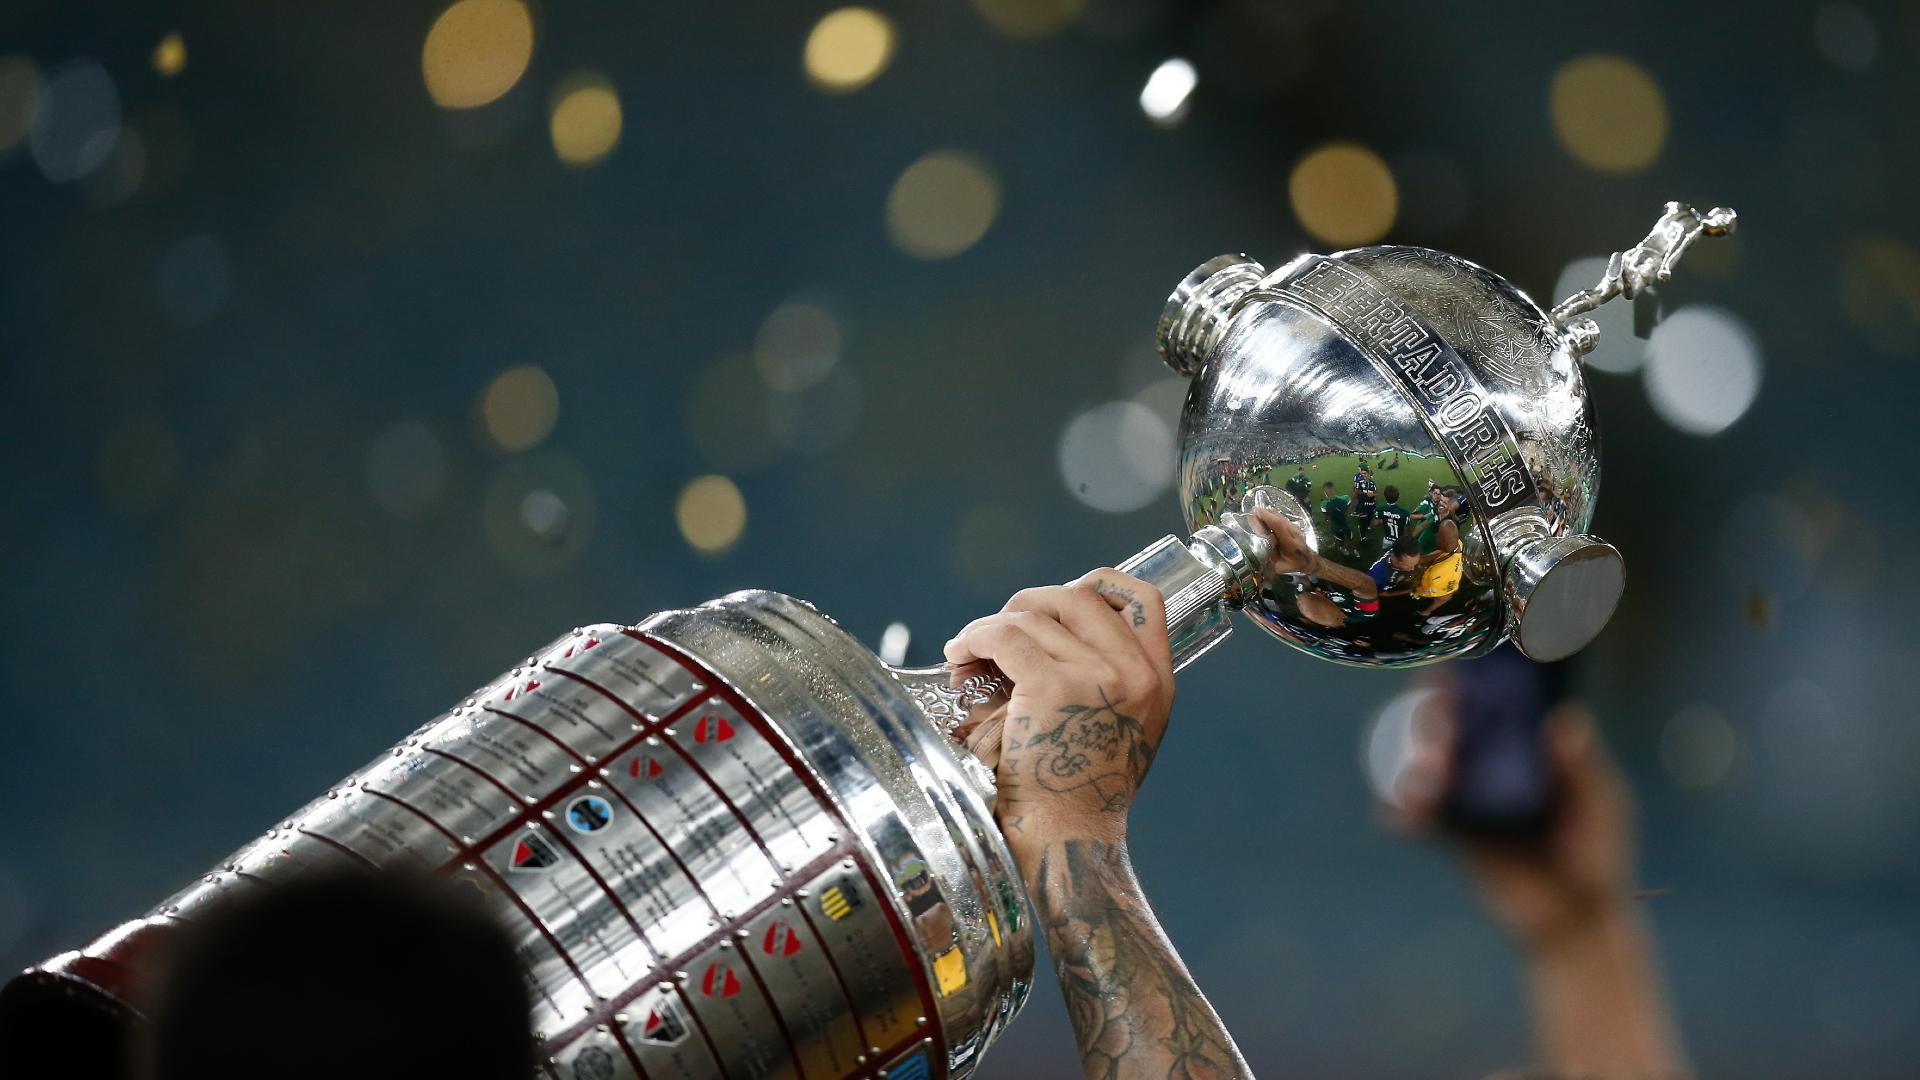 U” de Chile celebra 86 anos de sua fundação - CONMEBOL